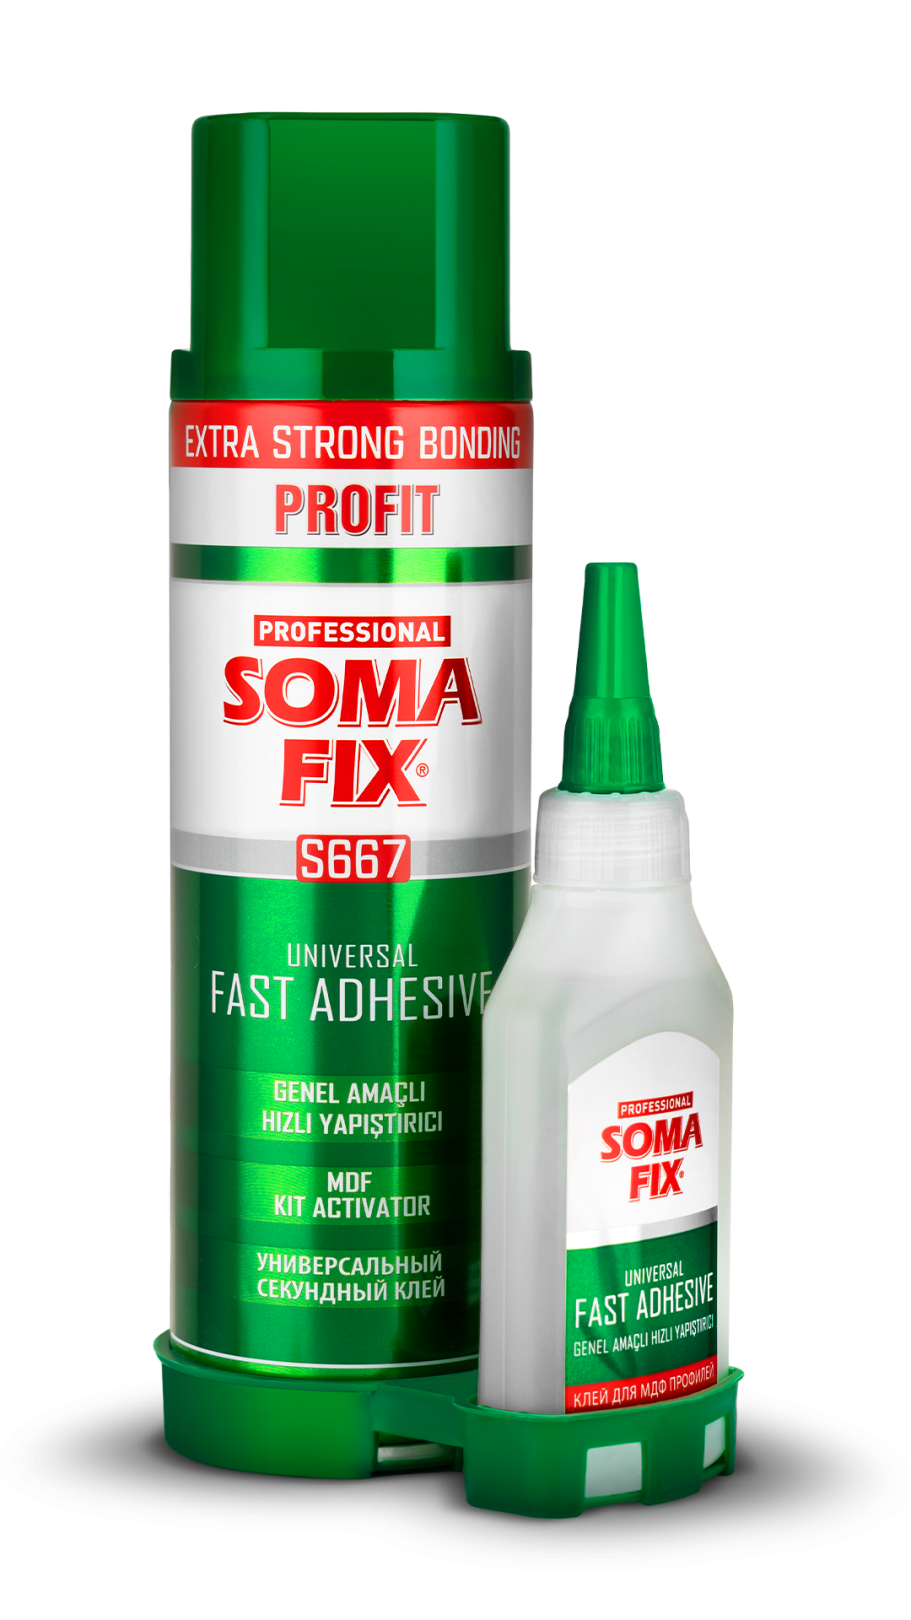 Somafix Profit Genel Amaçlı Hızlı Yapıştırıcı 500ml + 125gr S667